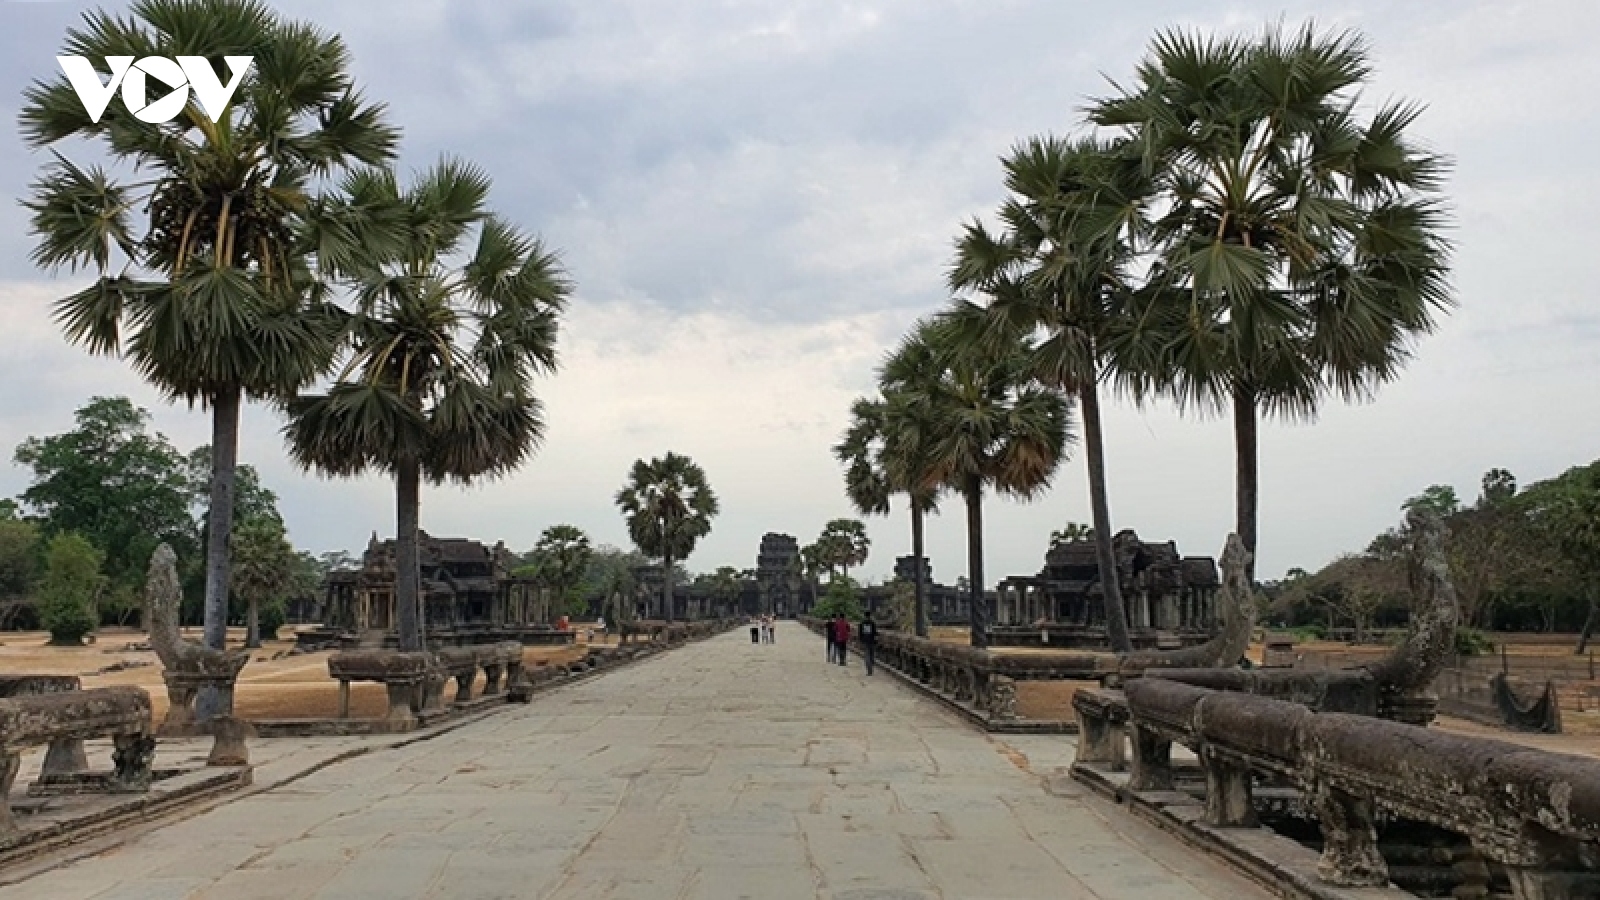 Quần thể Angkor sụt giảm 98,6% lượng du khách nước ngoài